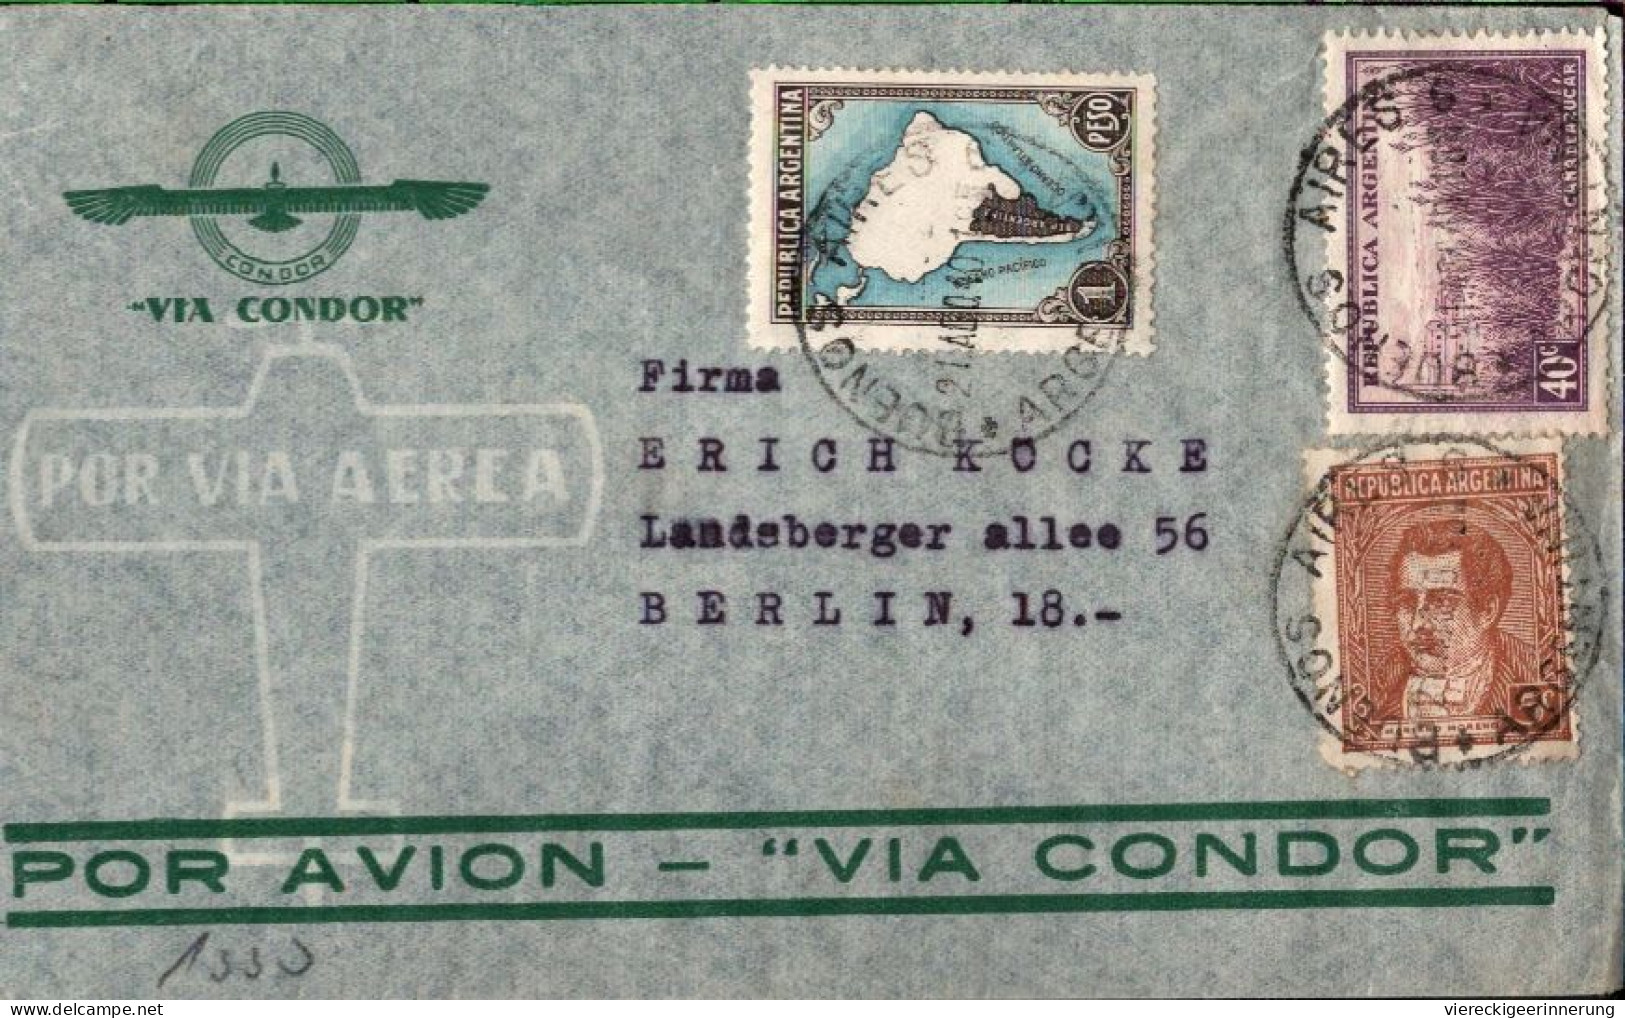 ! Argentinien 1940 Luftpost Brief Aus Buenos Aires Nach Berlin Mit OKW Zensur, Censor Mark, Airmail Via Condor - Briefe U. Dokumente